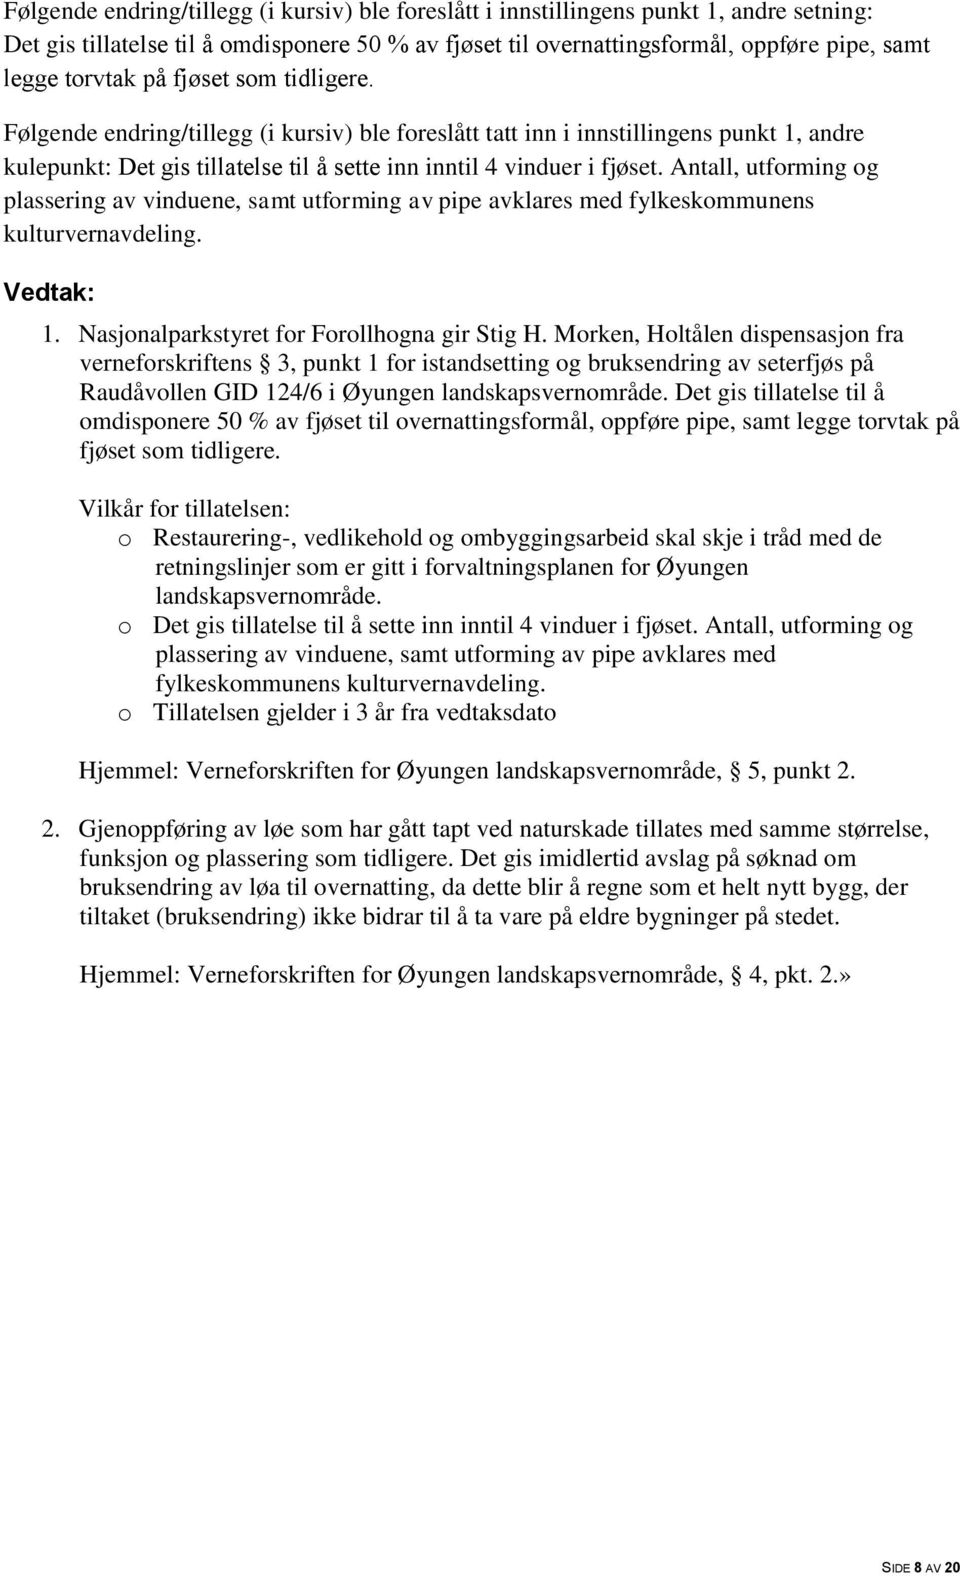 Morken, Holtålen dispensasjon fra verneforskriftens 3, punkt 1 for istandsetting og bruksendring av seterfjøs på Raudåvollen GID 124/6 i Øyungen landskapsvernområde.